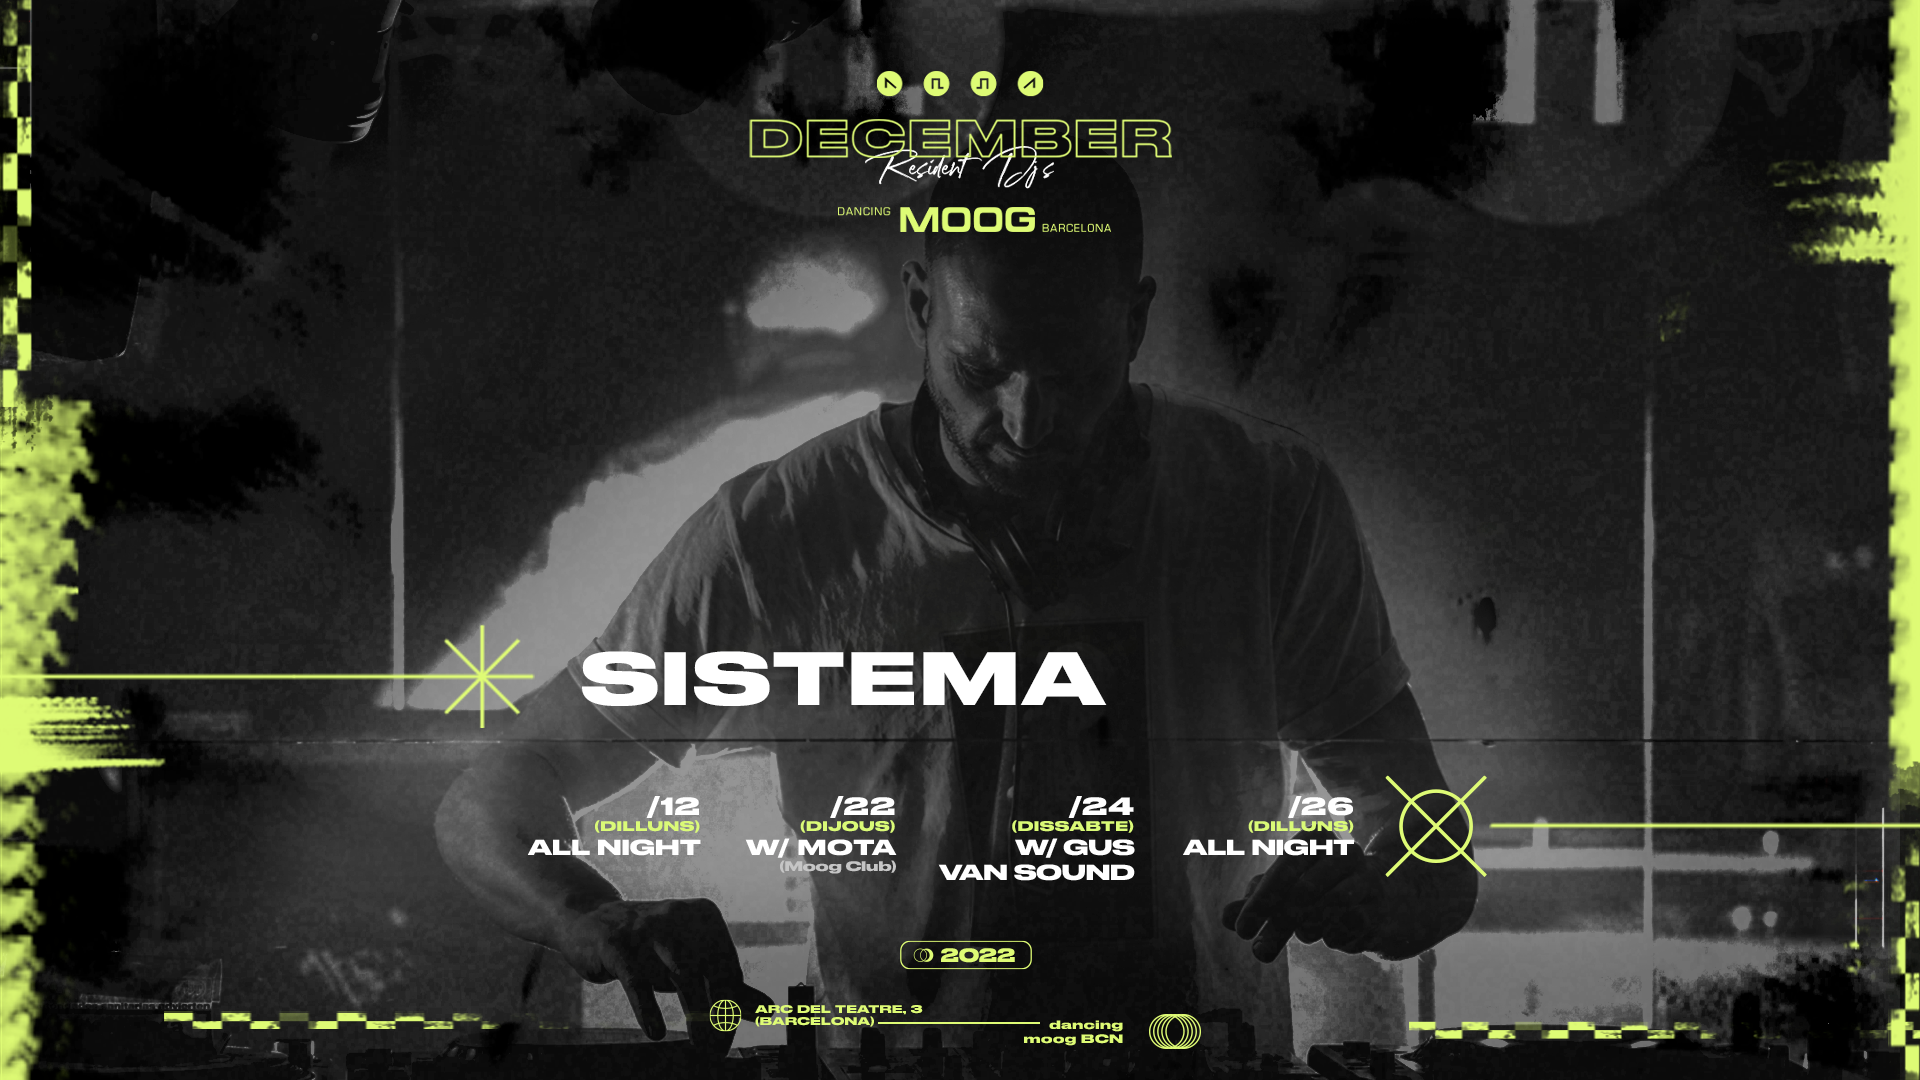 Sistema (MOOG Club) + Mota (MOOG Club) at Moog Club, Barcelona